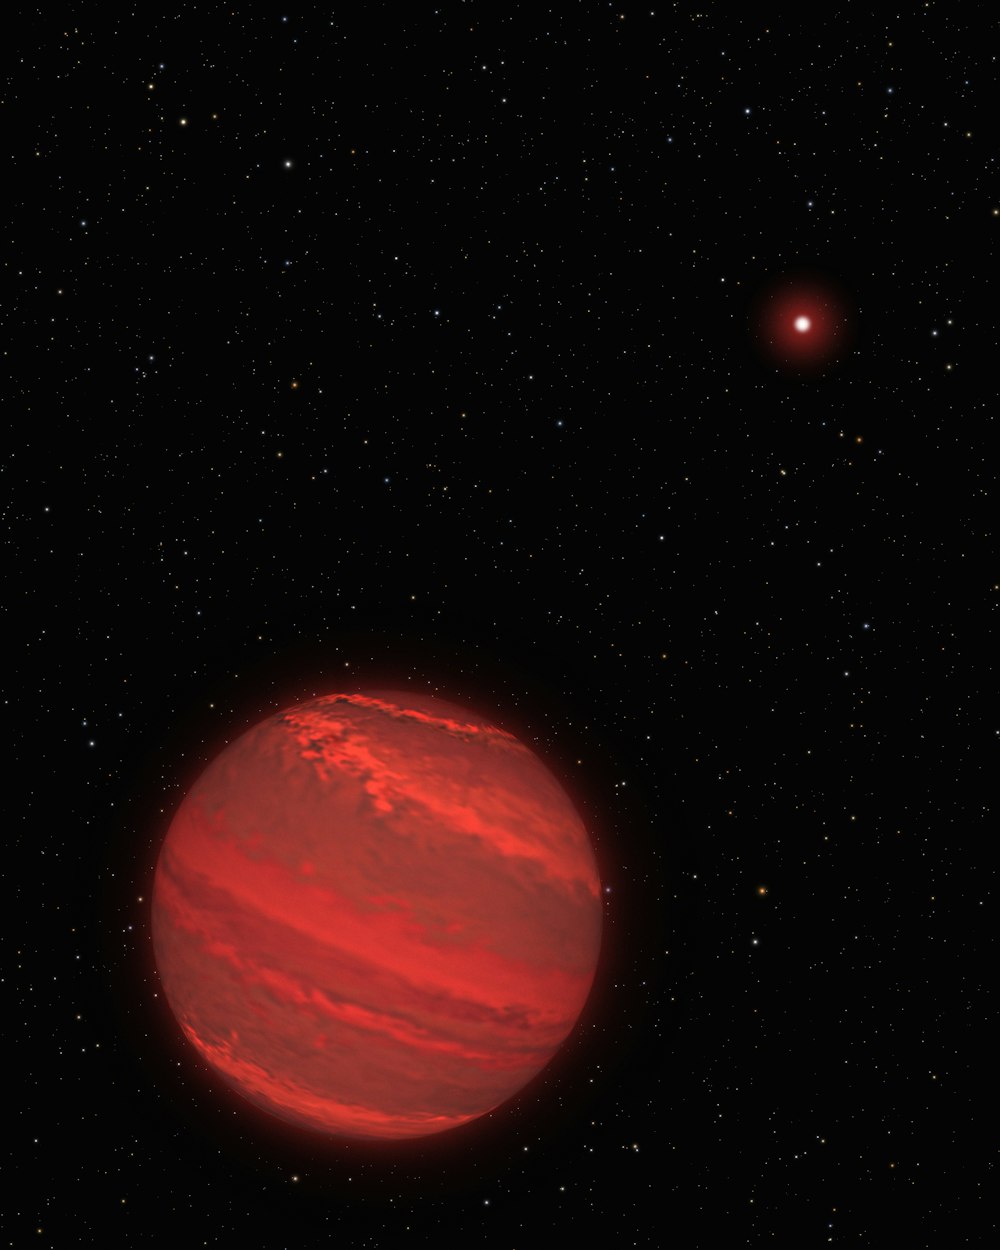 Impresión artística de un planeta rojo en el espacio